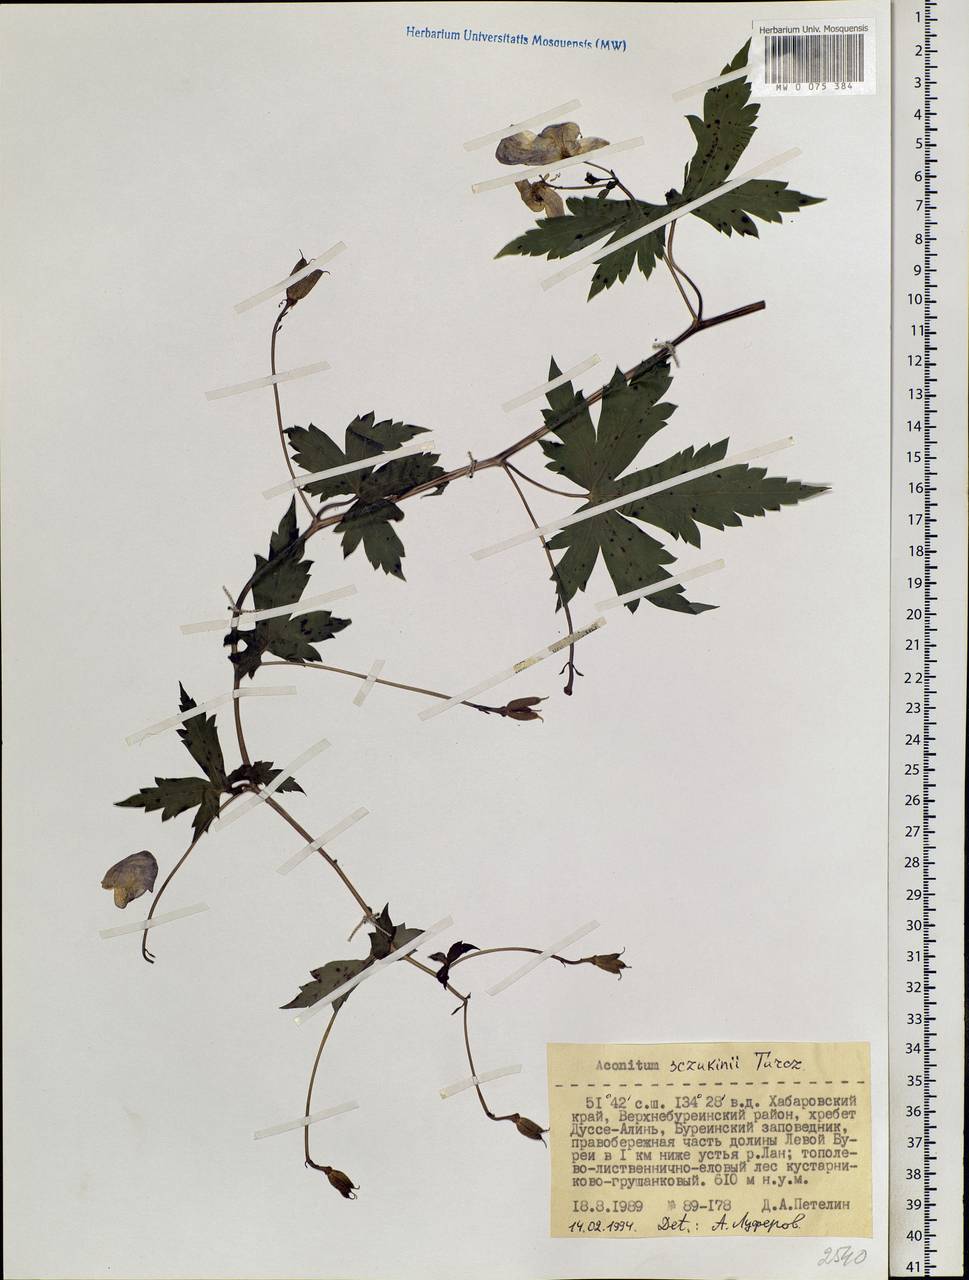 Aconitum sczukinii Turcz., Siberia, Russian Far East (S6) (Russia)